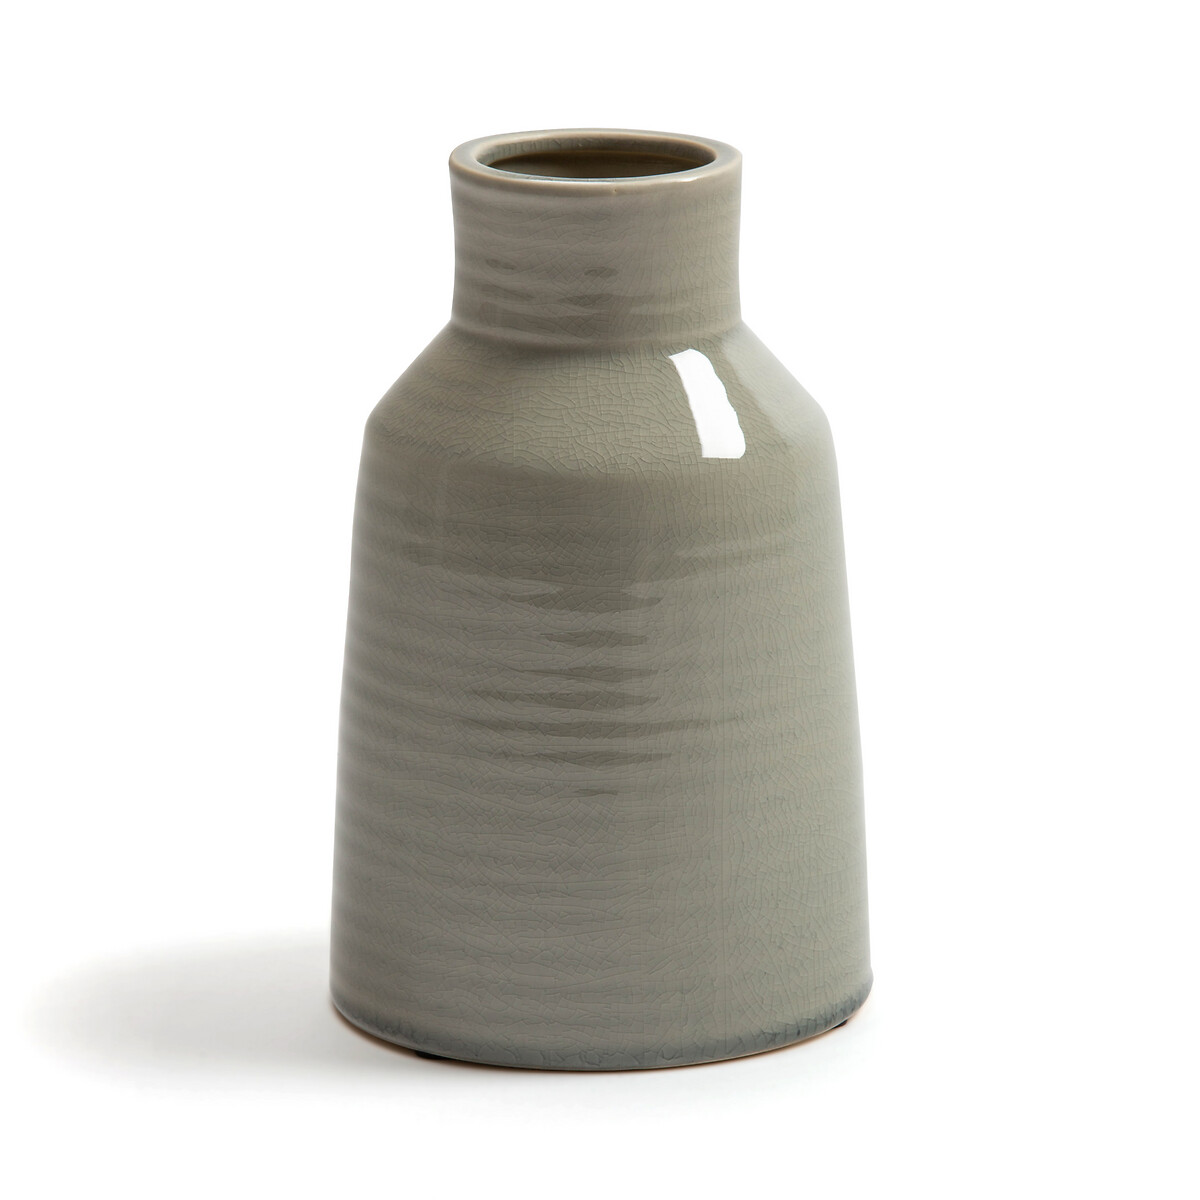 Pastela 23cm High Ceramic Vase